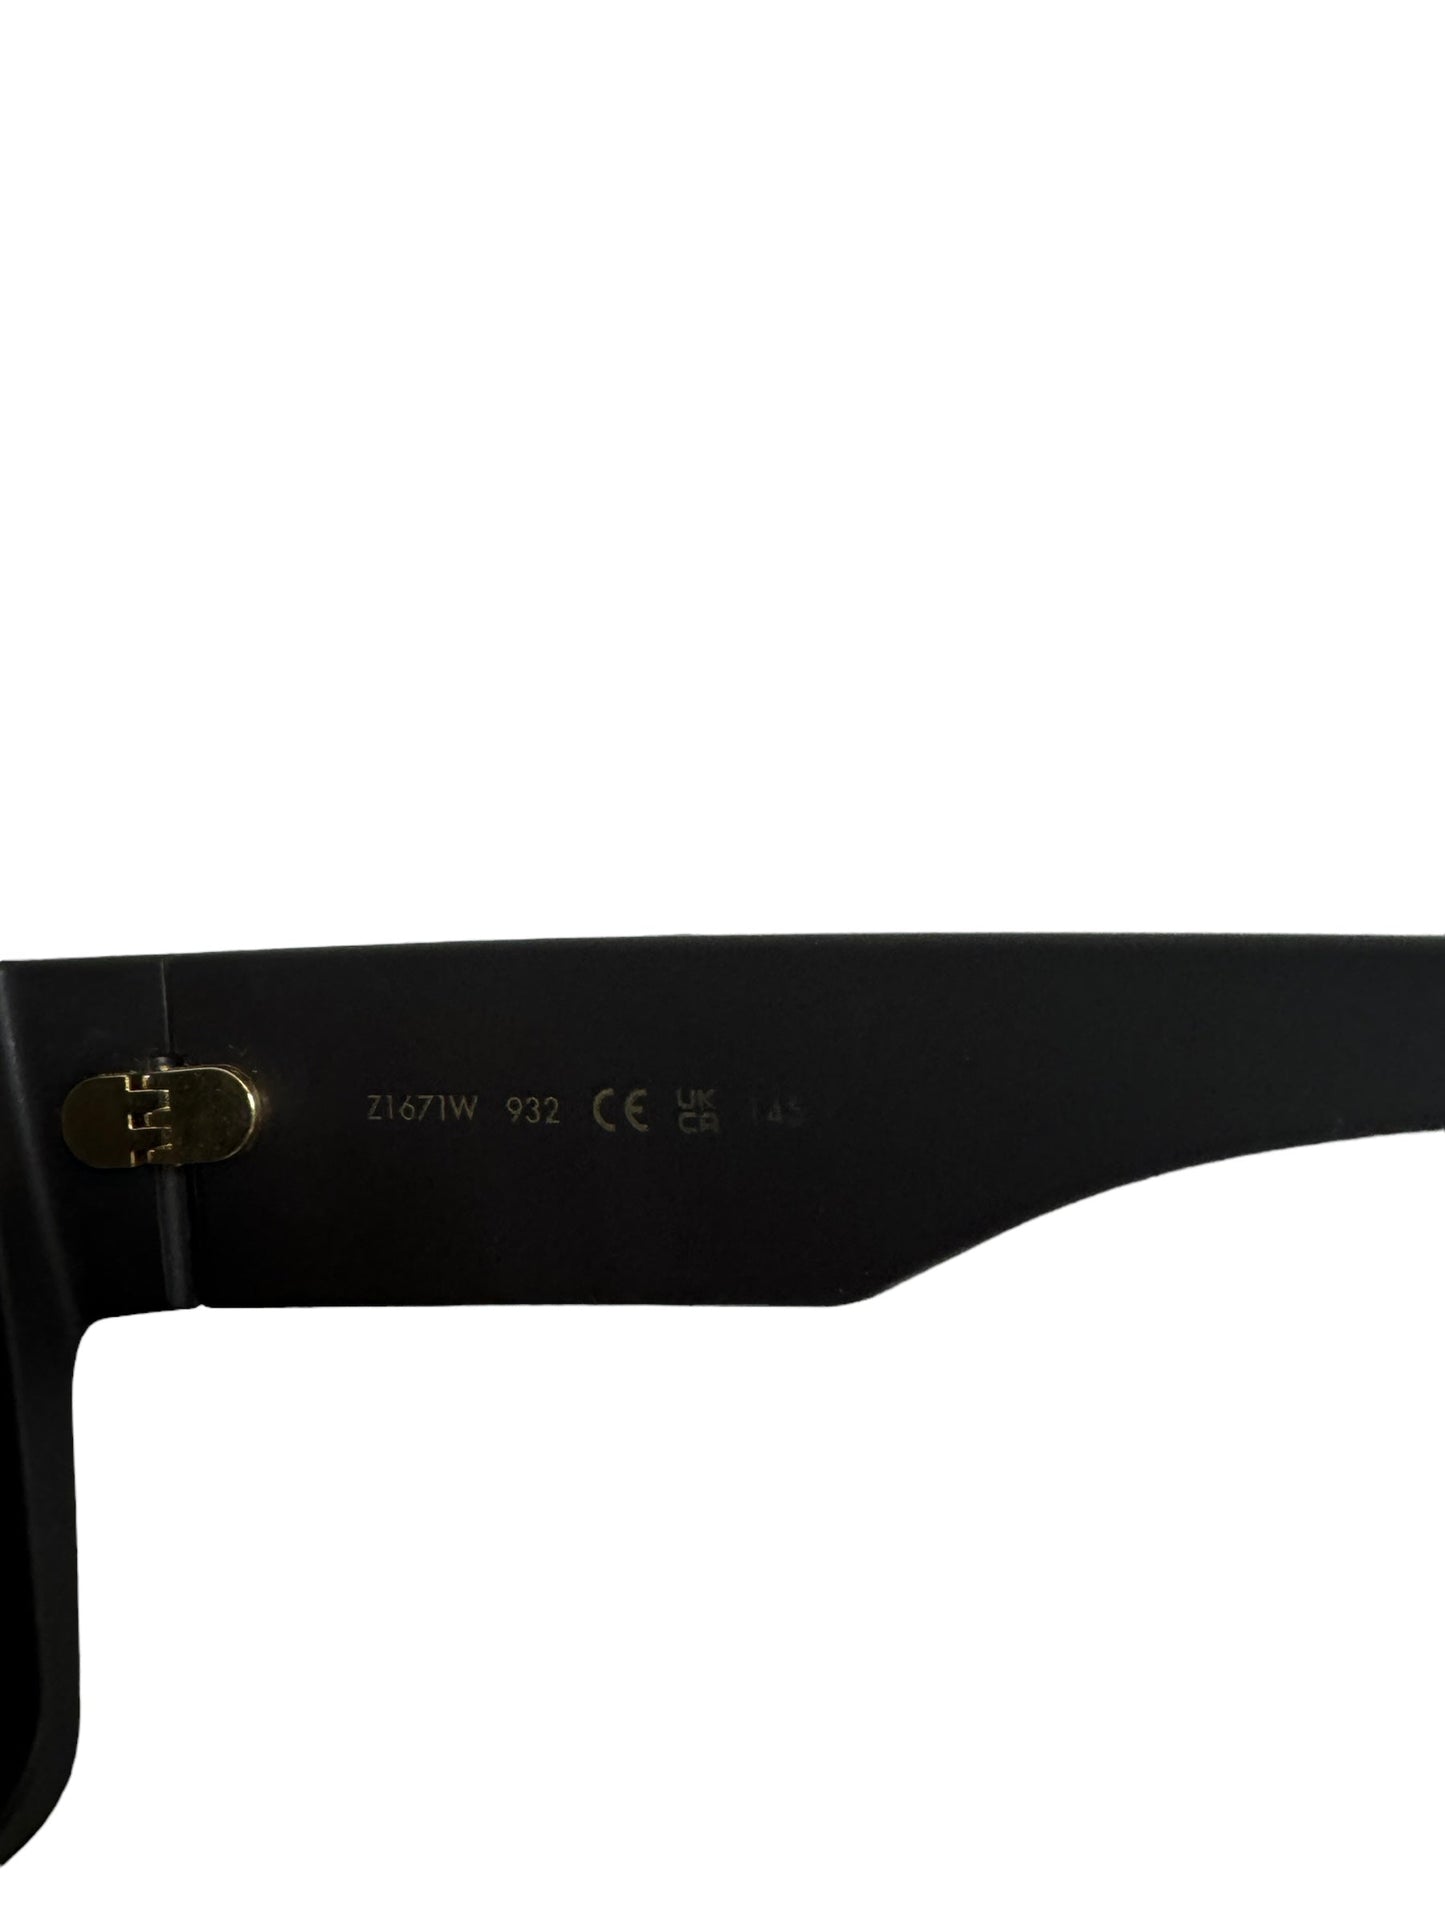 Sunglasses Luxury Designer Louis Vuitton